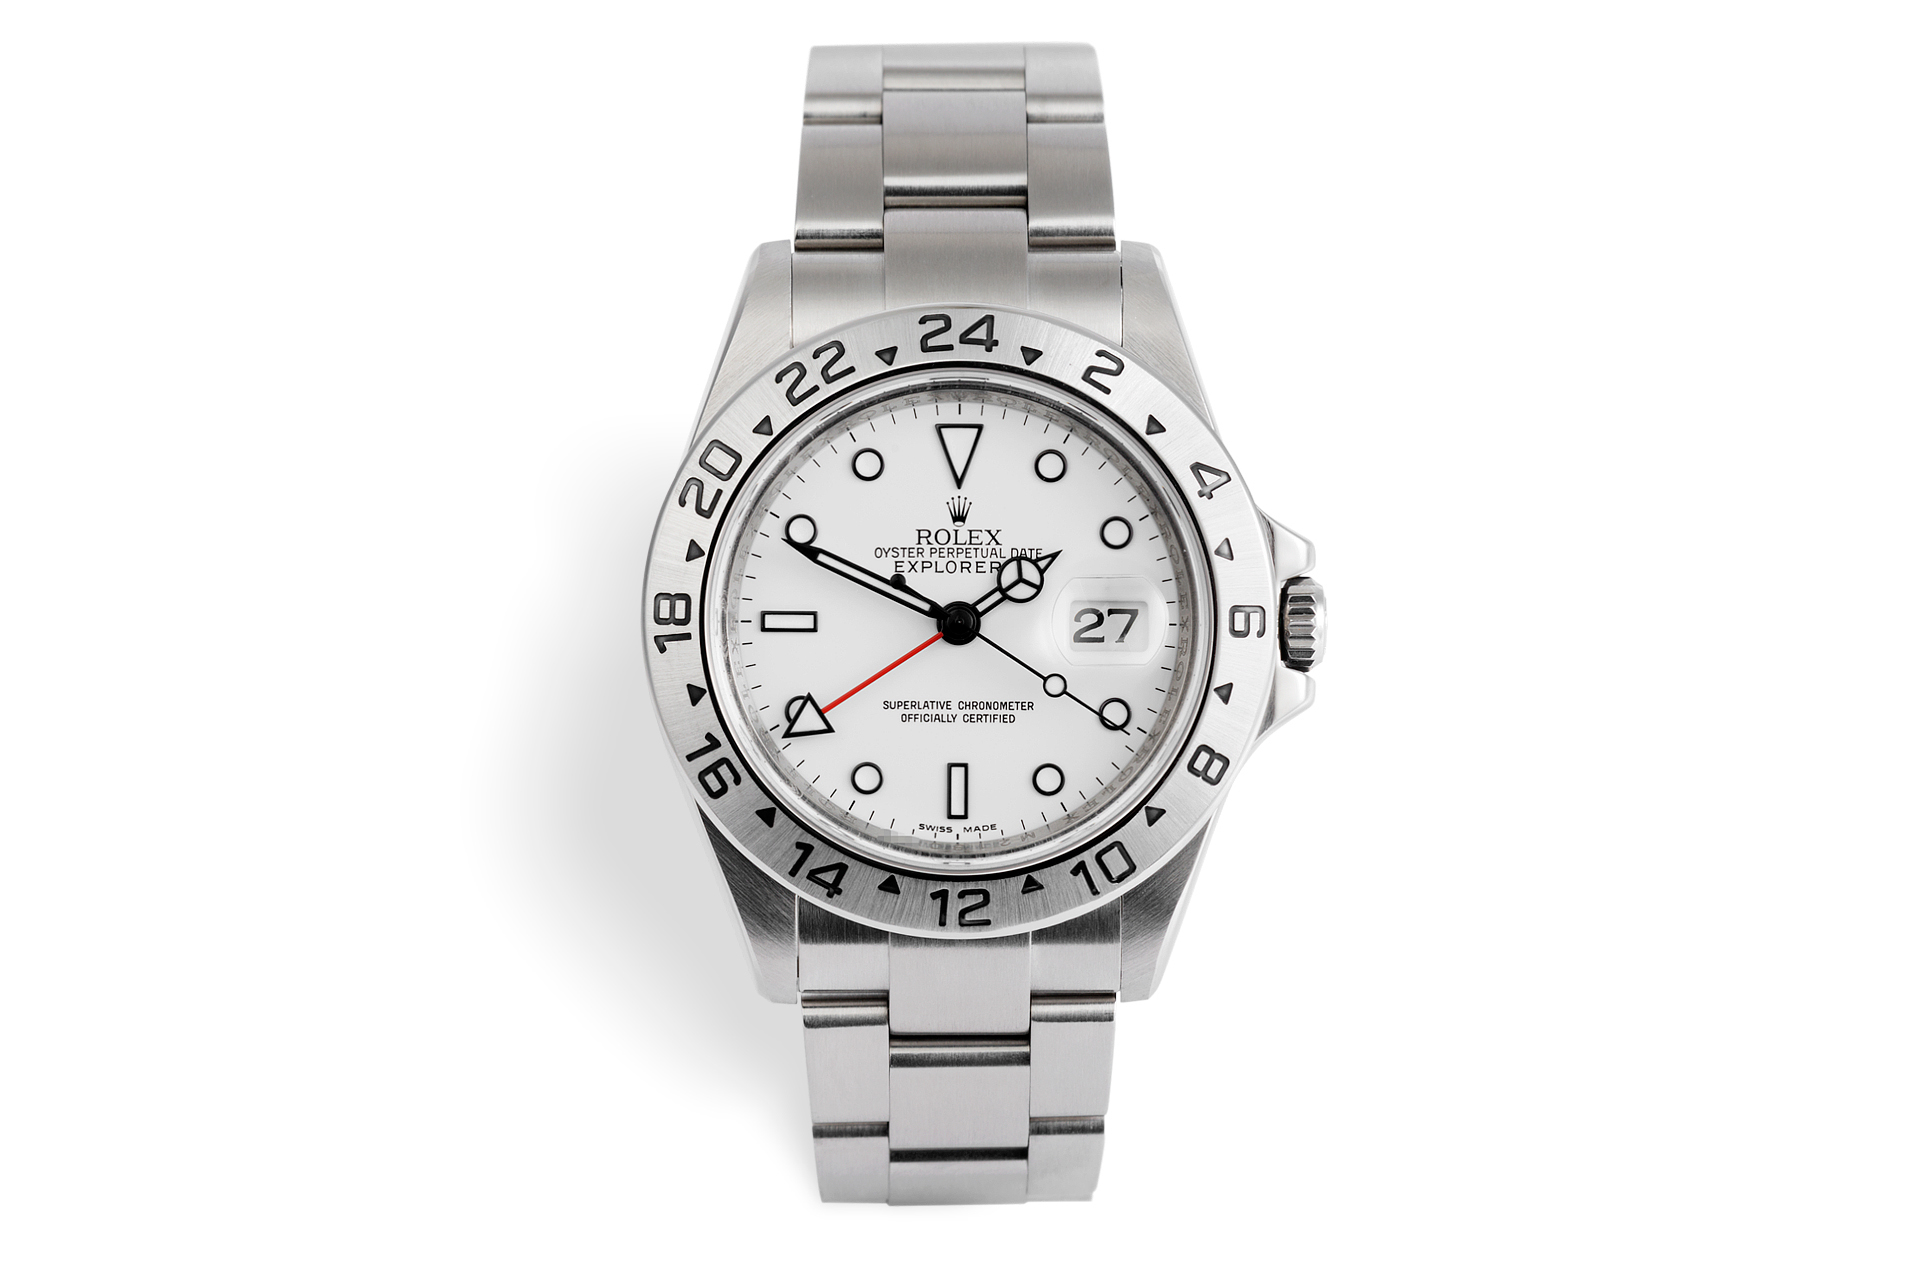 Rolex Explorer II Watches | ref 16570 